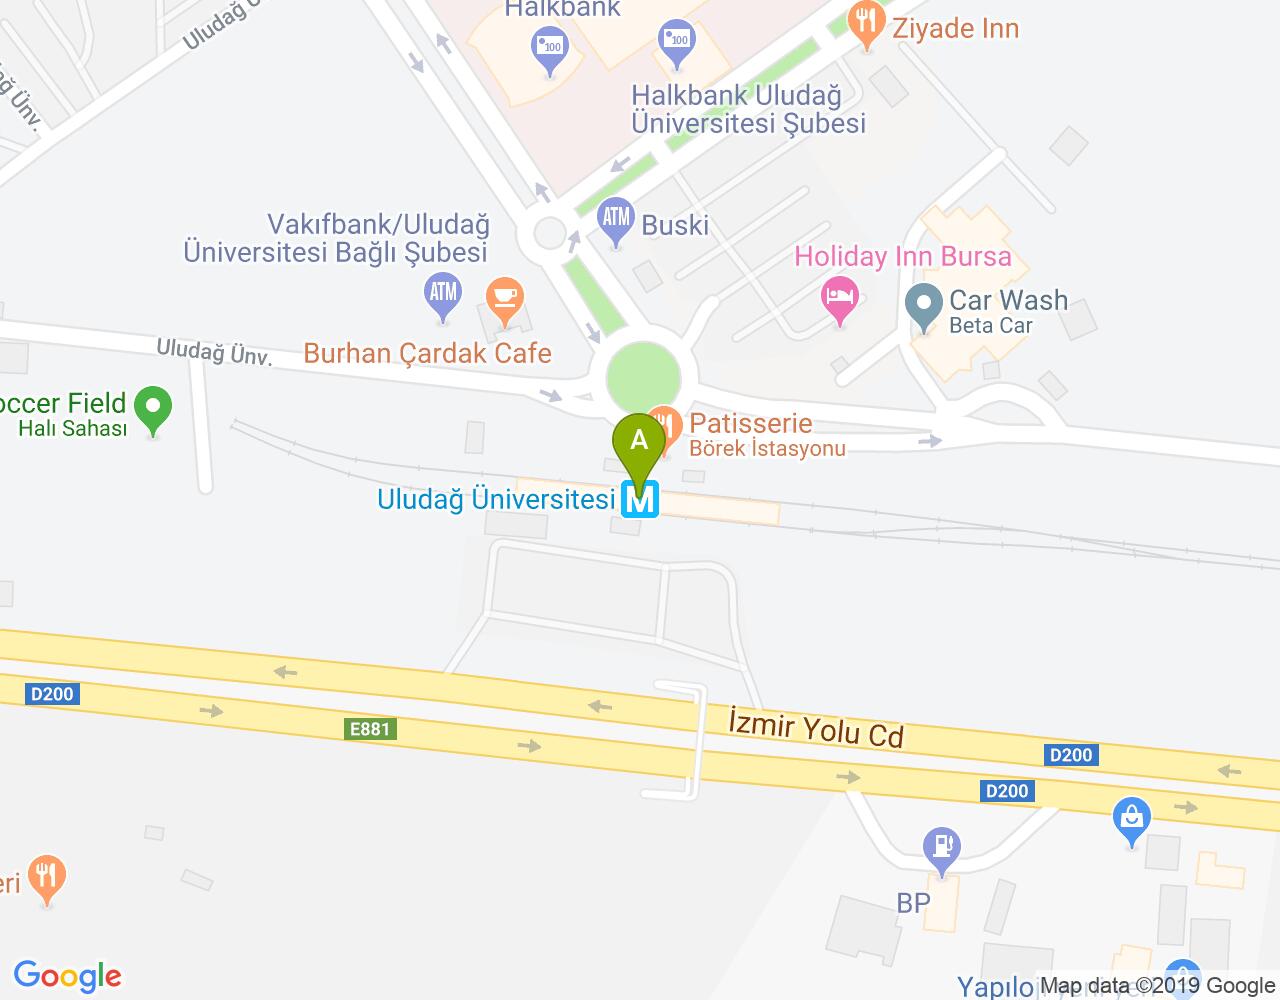 Uludağ Üniversitesi Metro harita